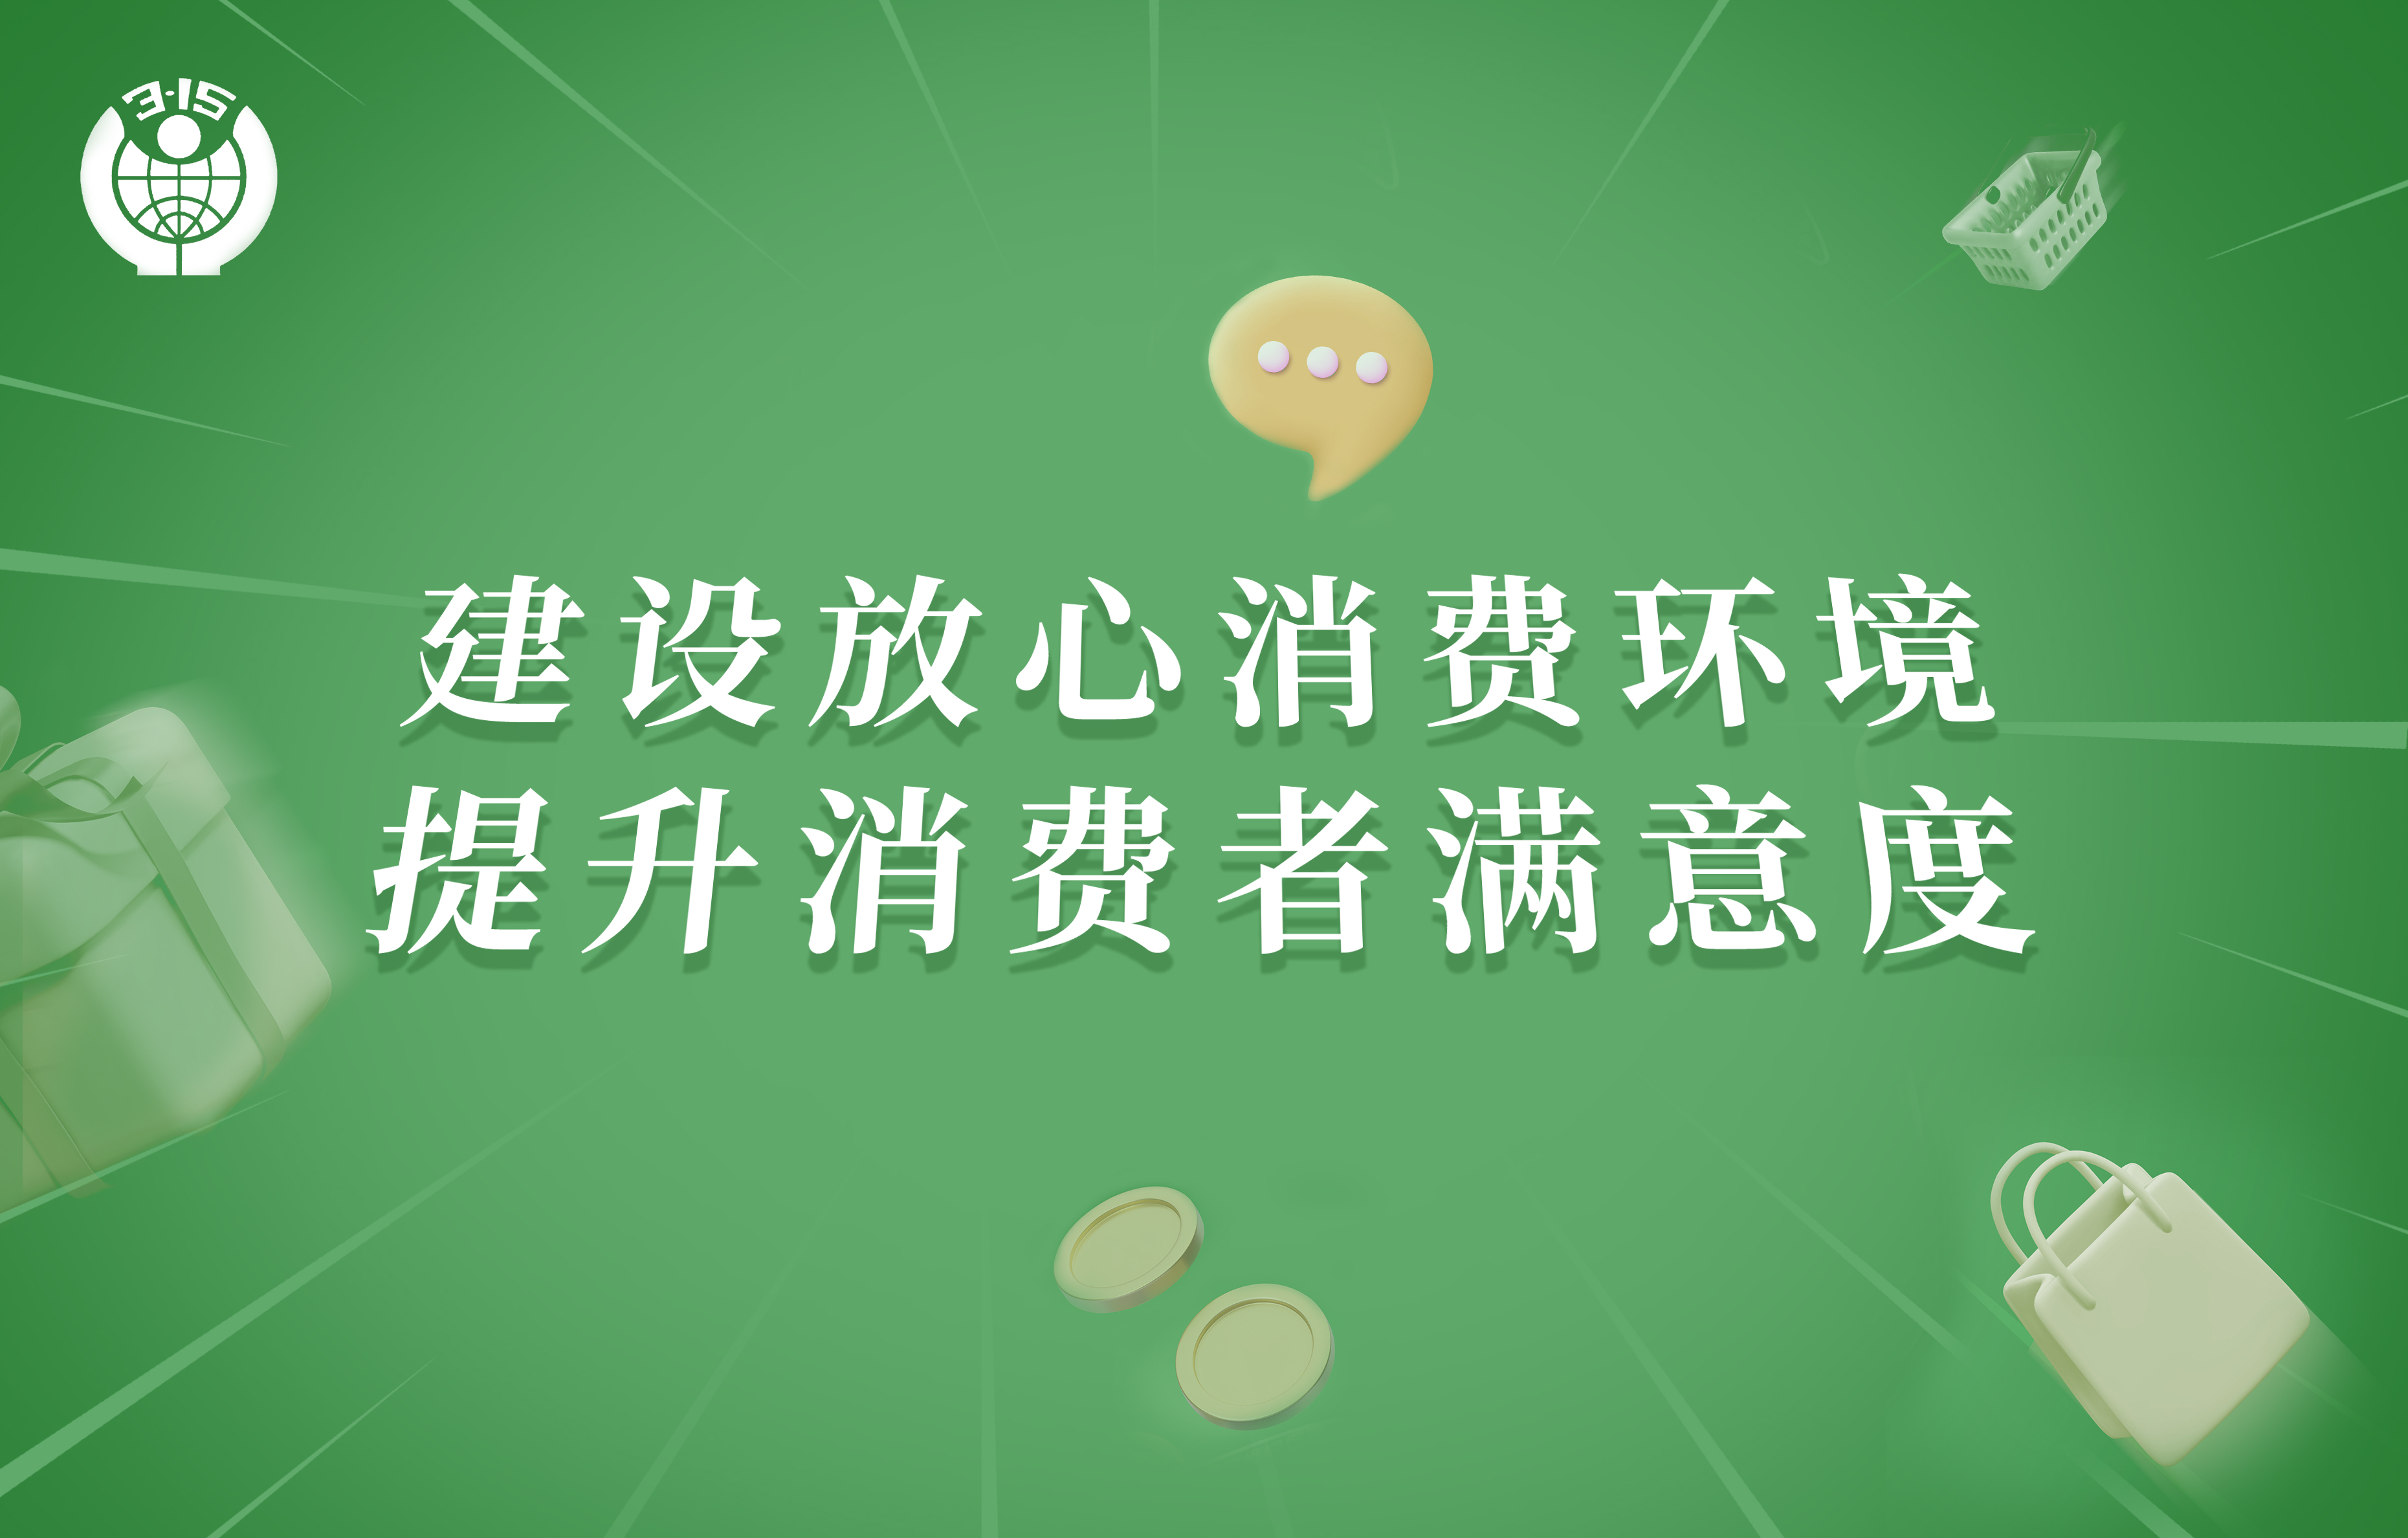 天王表积极响应“深圳市放心消费环境建设”号召，推进营造优良消费环境